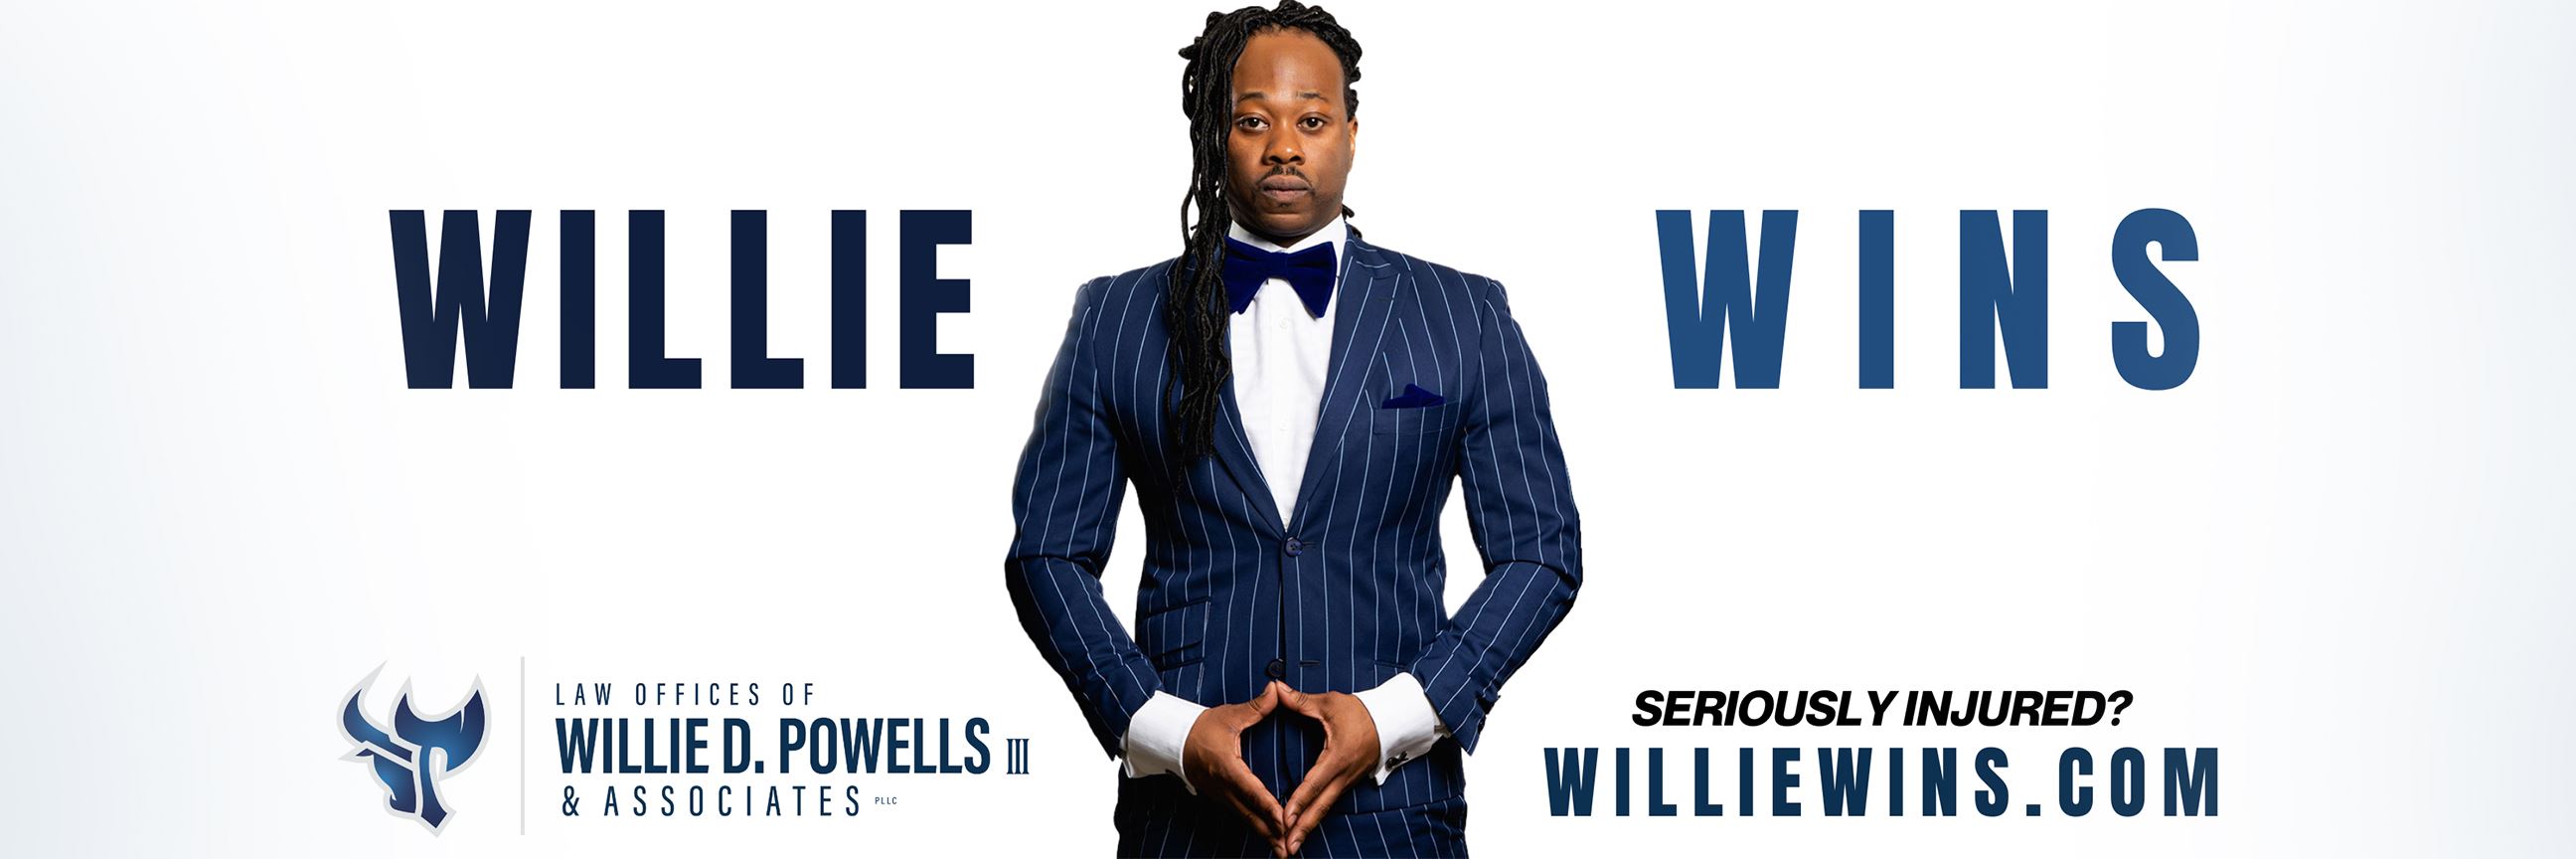 Willie Billboard 6